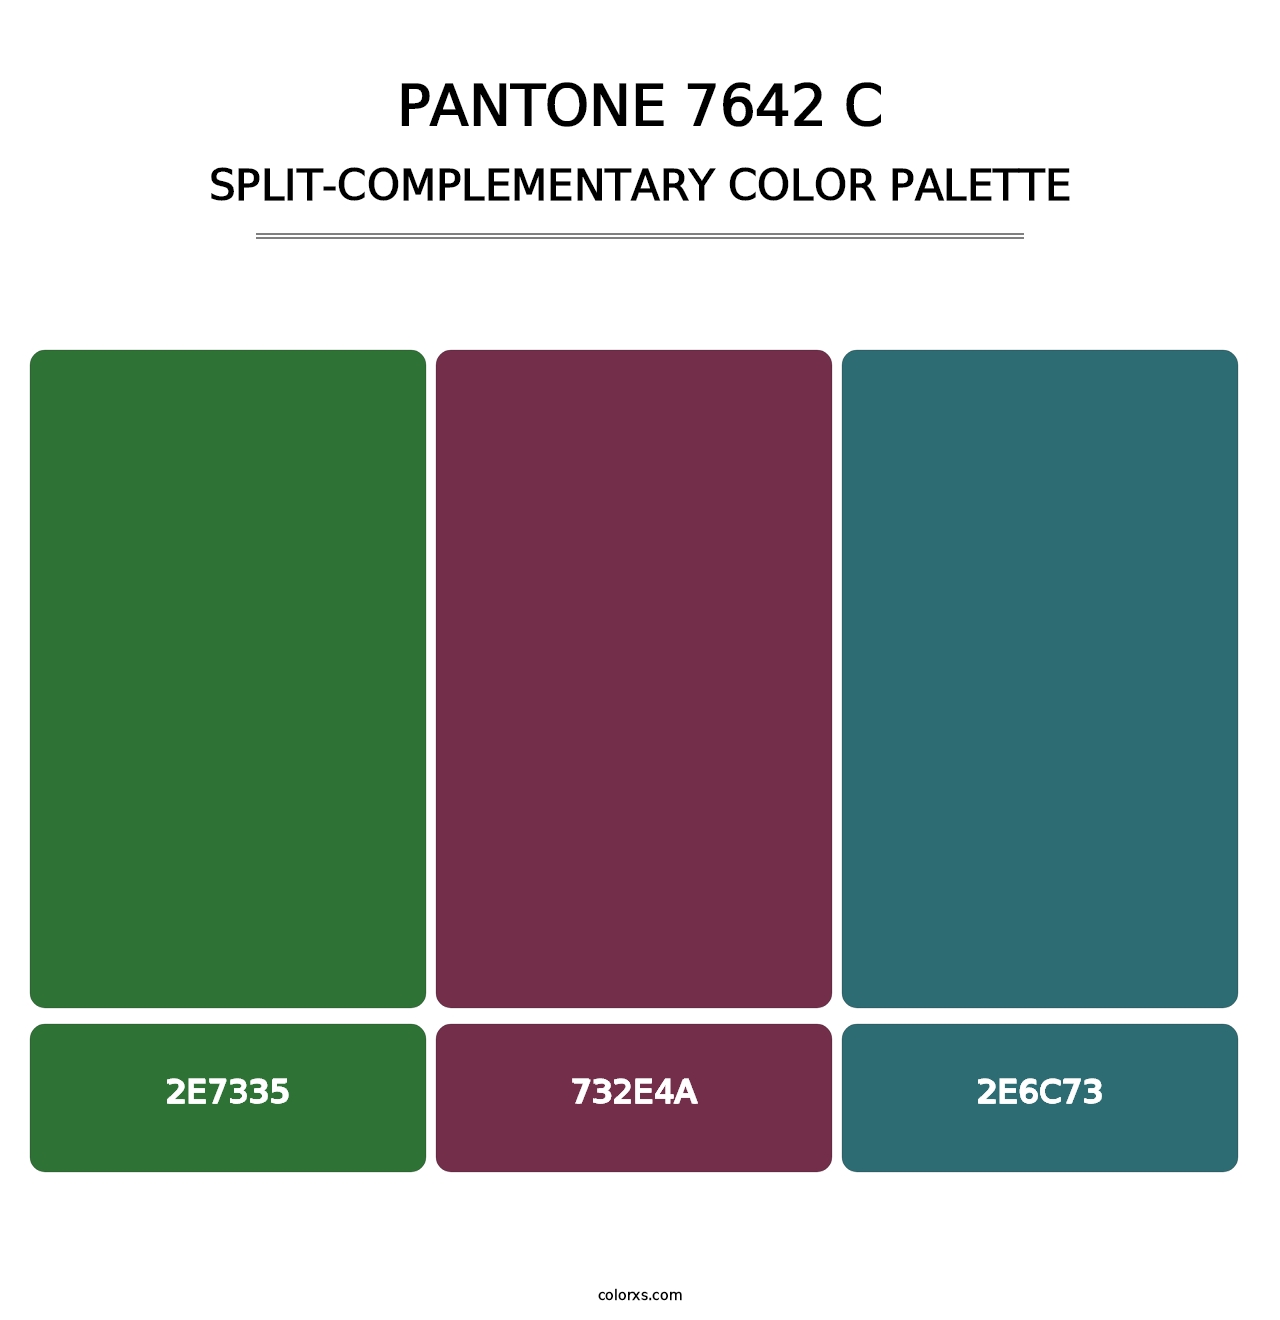 PANTONE 7642 C - Split-Complementary Color Palette